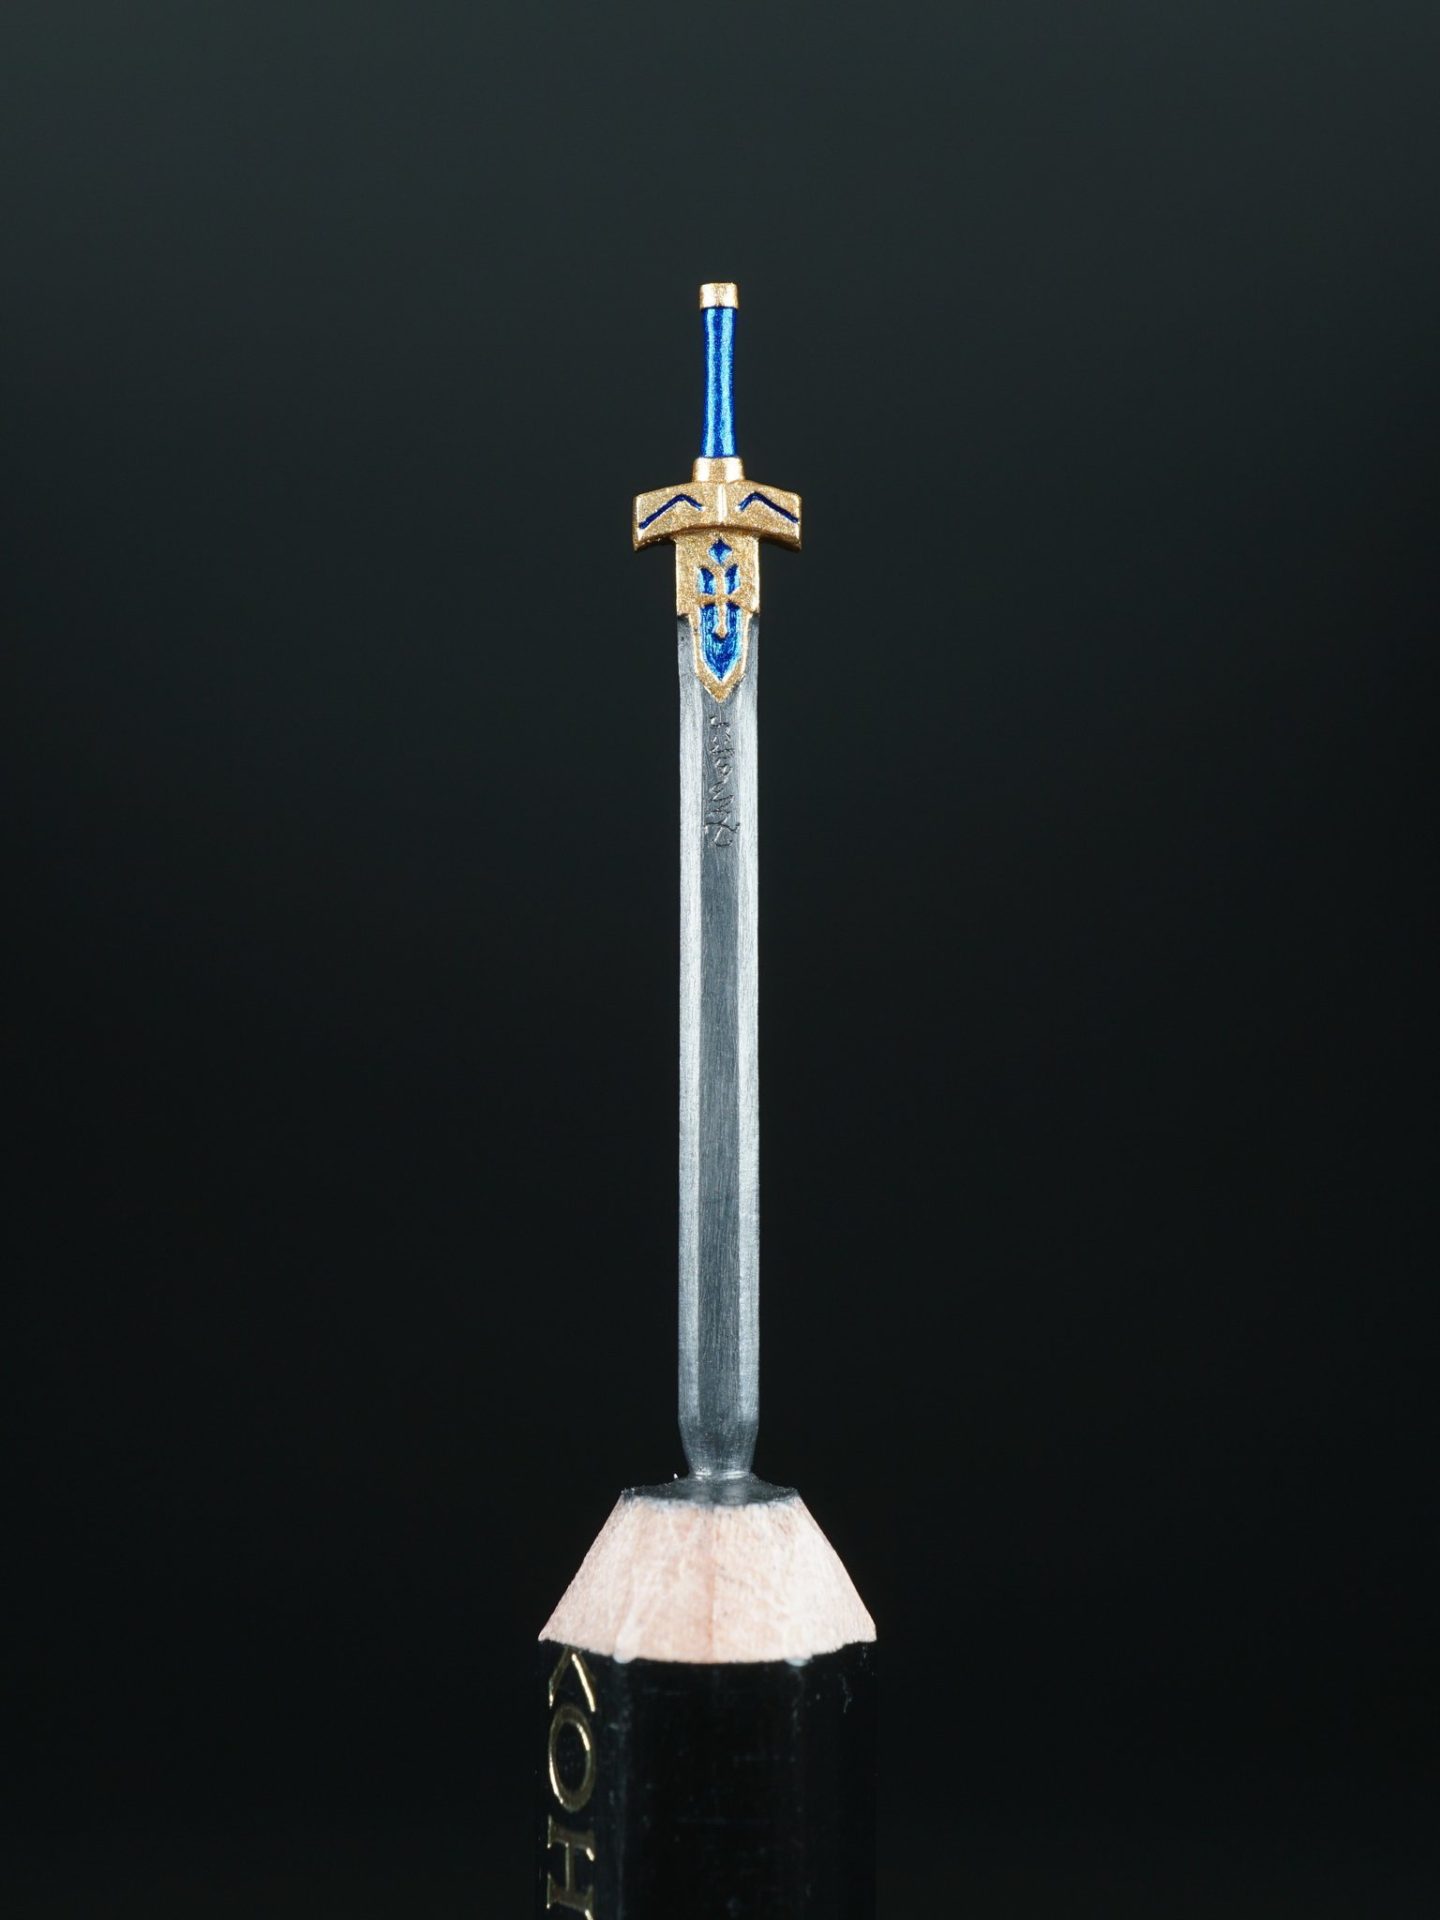 日鉛筆雕刻達人刻出《Fate》「誓約勝利之劍Excalibur」 - 電腦王阿達